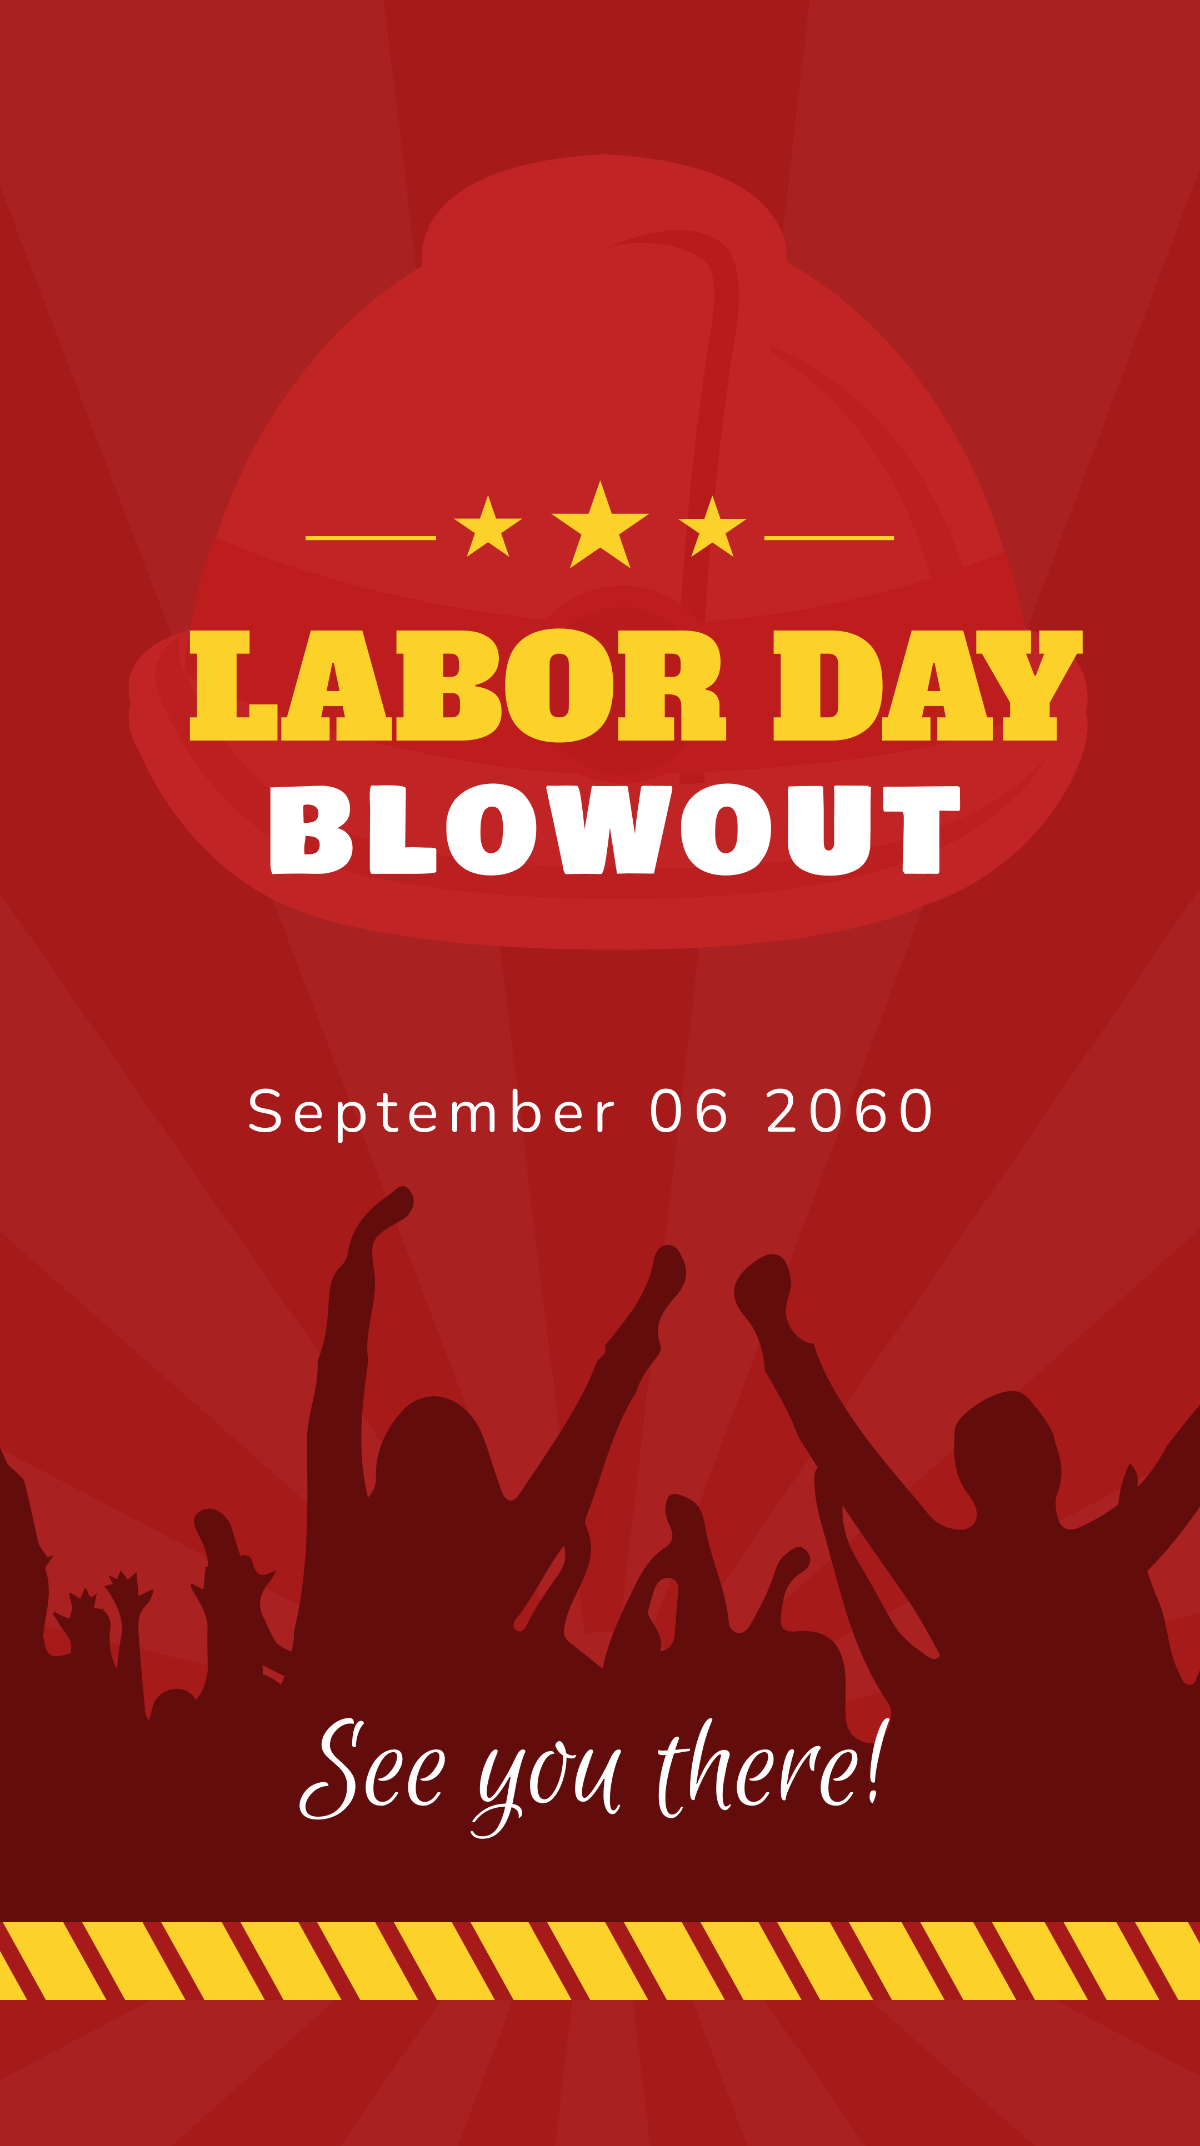 Labor Day Invitation Background Template